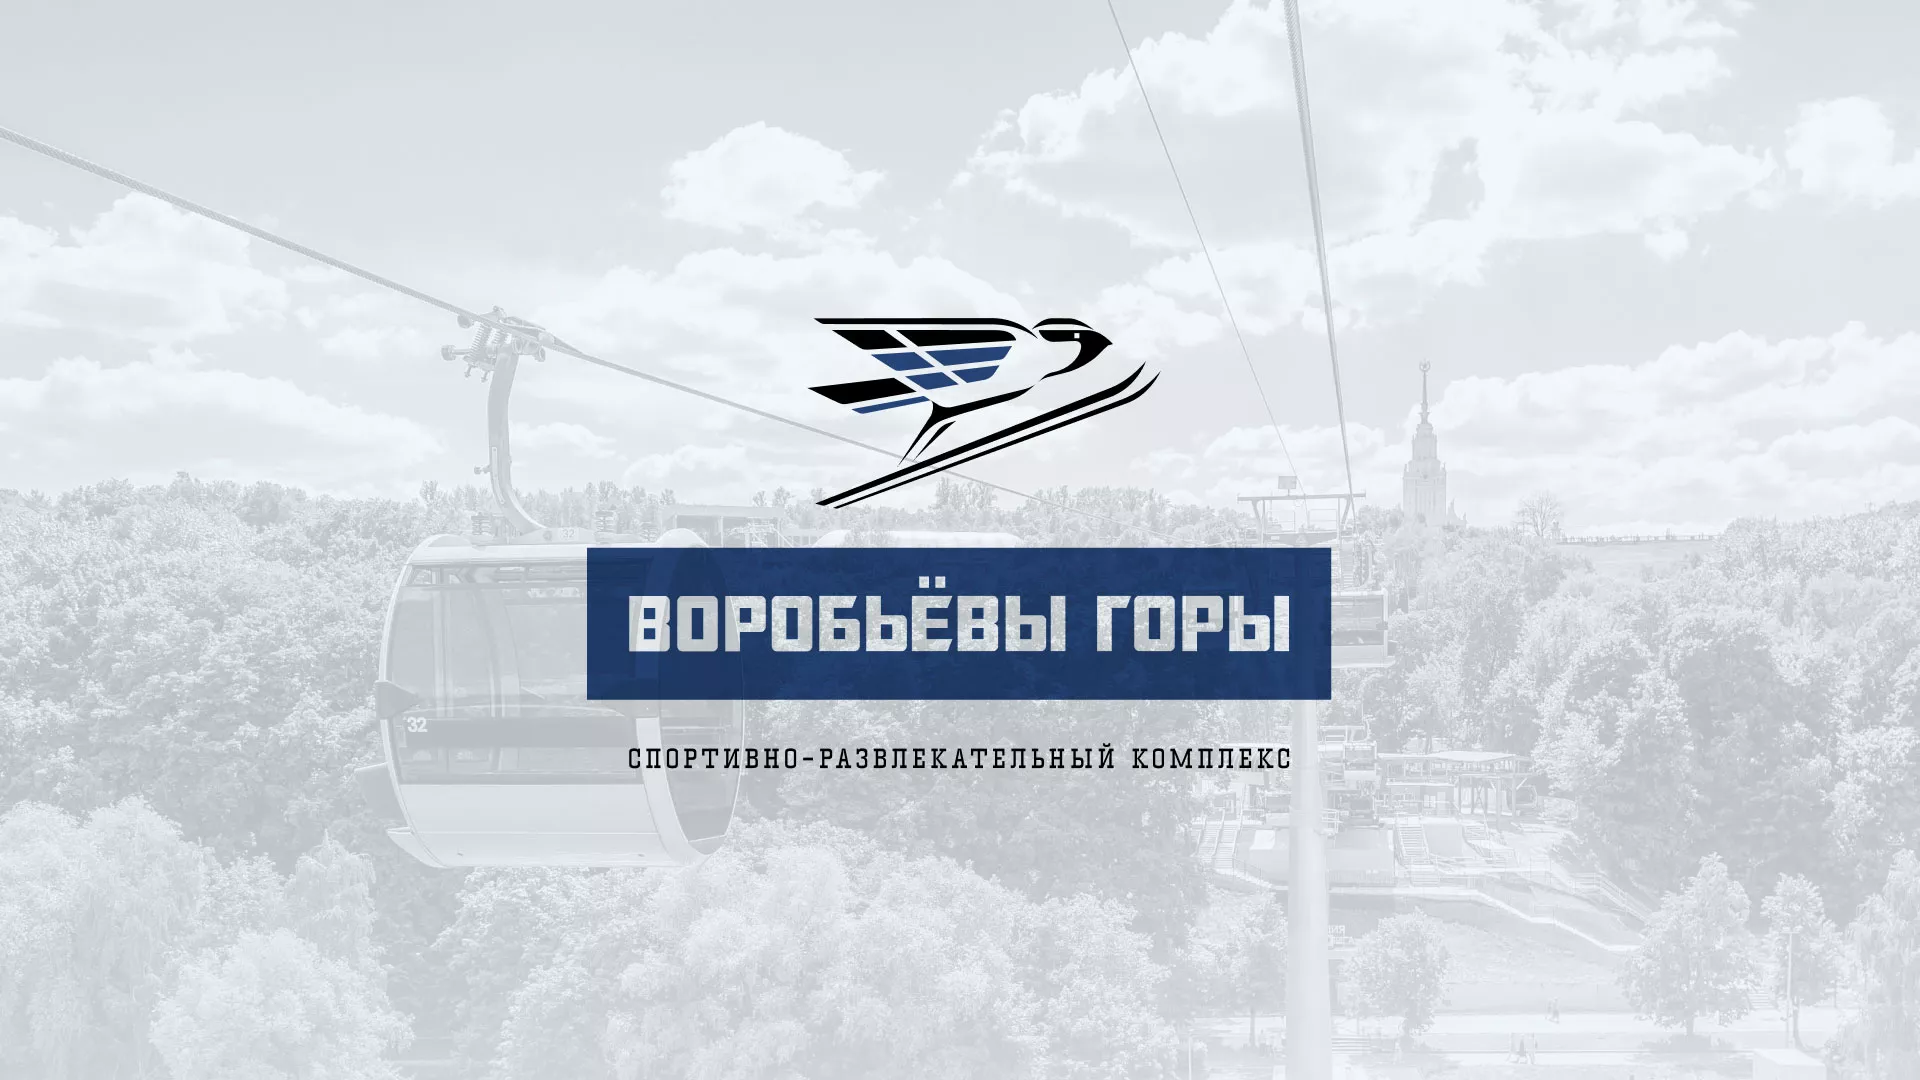 Разработка сайта в Усть-Катаве для спортивно-развлекательного комплекса «Воробьёвы горы»